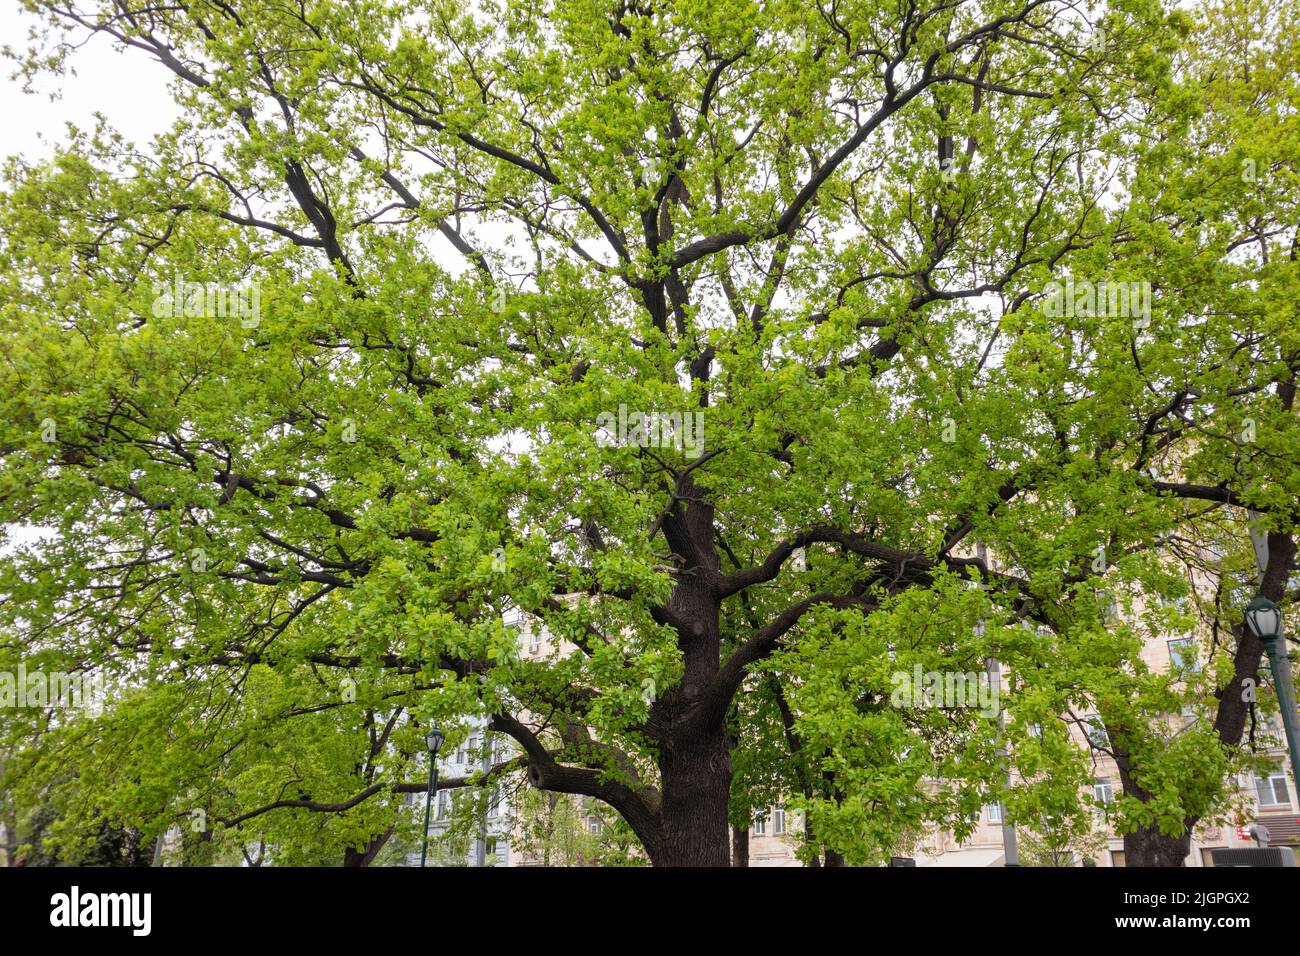 Grande quercia vecchia con foglie giovani di verde chiaro nel parco primaverile della città. Guarda attraverso lunghi rami di alberi verdi e chiari sul cielo grigio Foto Stock